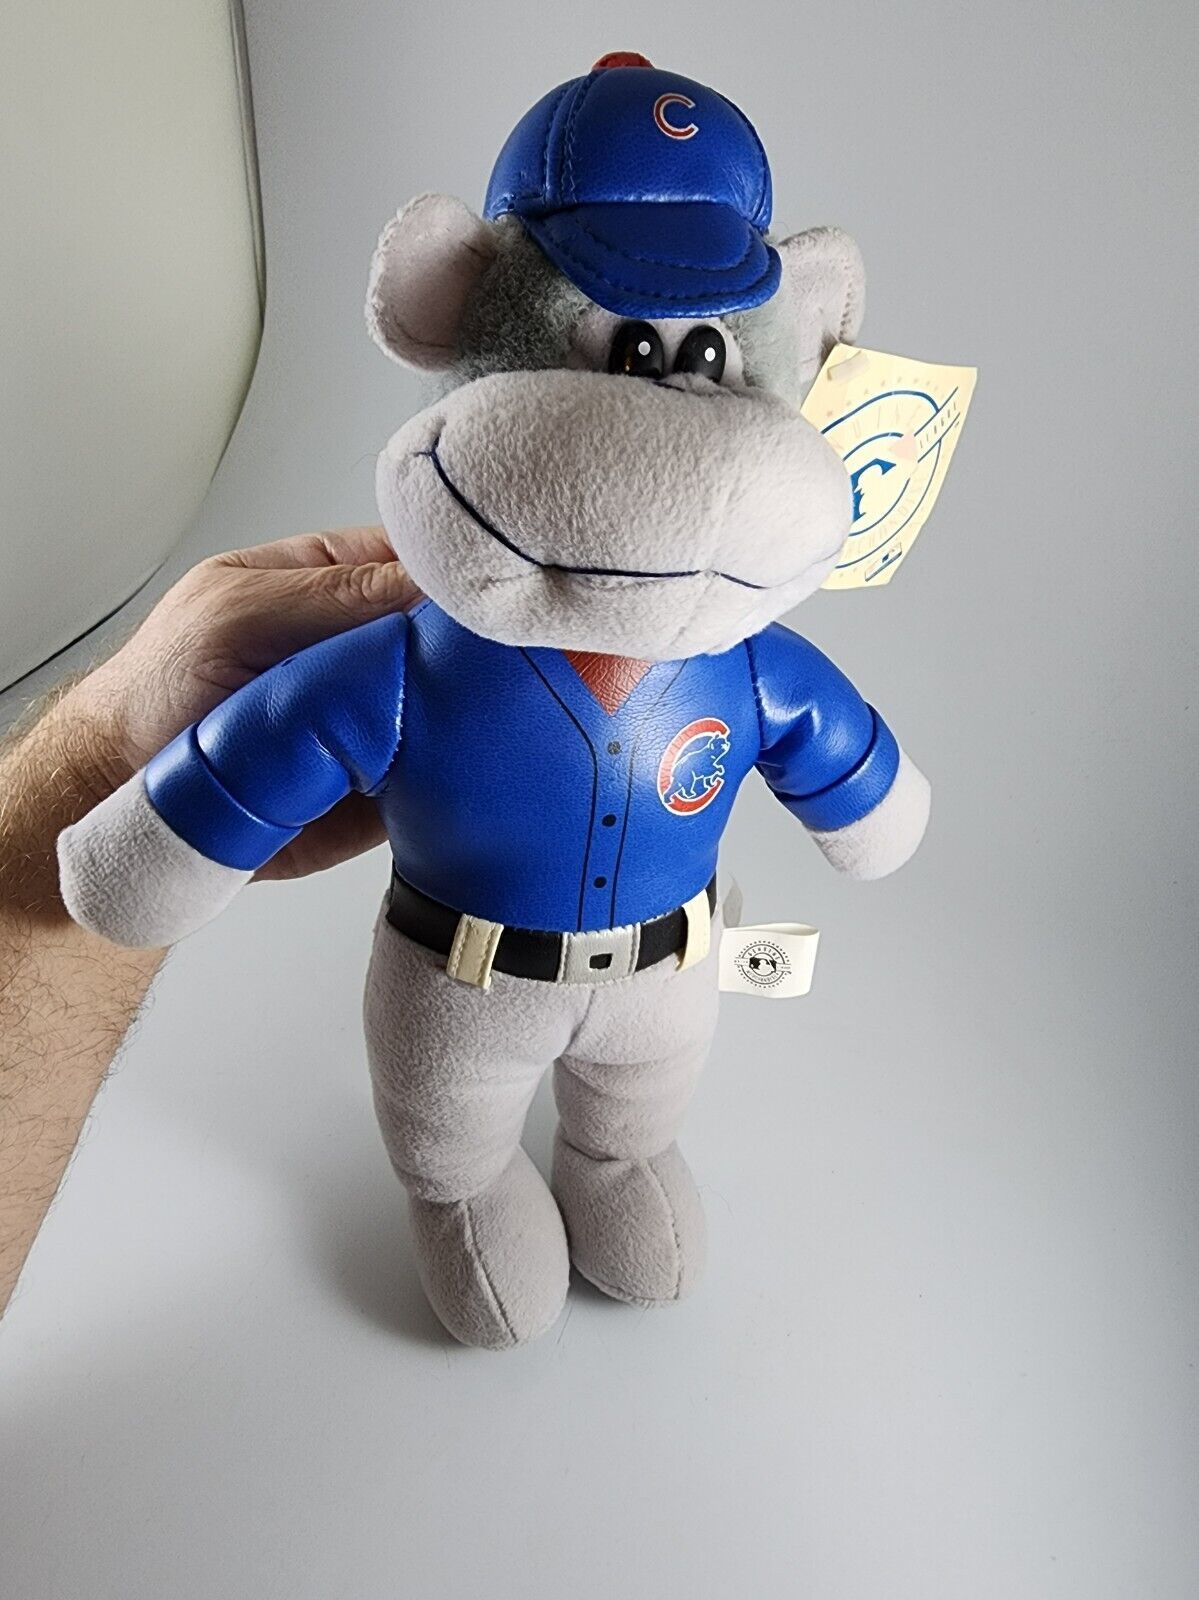 MLB Baseball Chicago Cubs monkey Plush Toy and 13 similar items